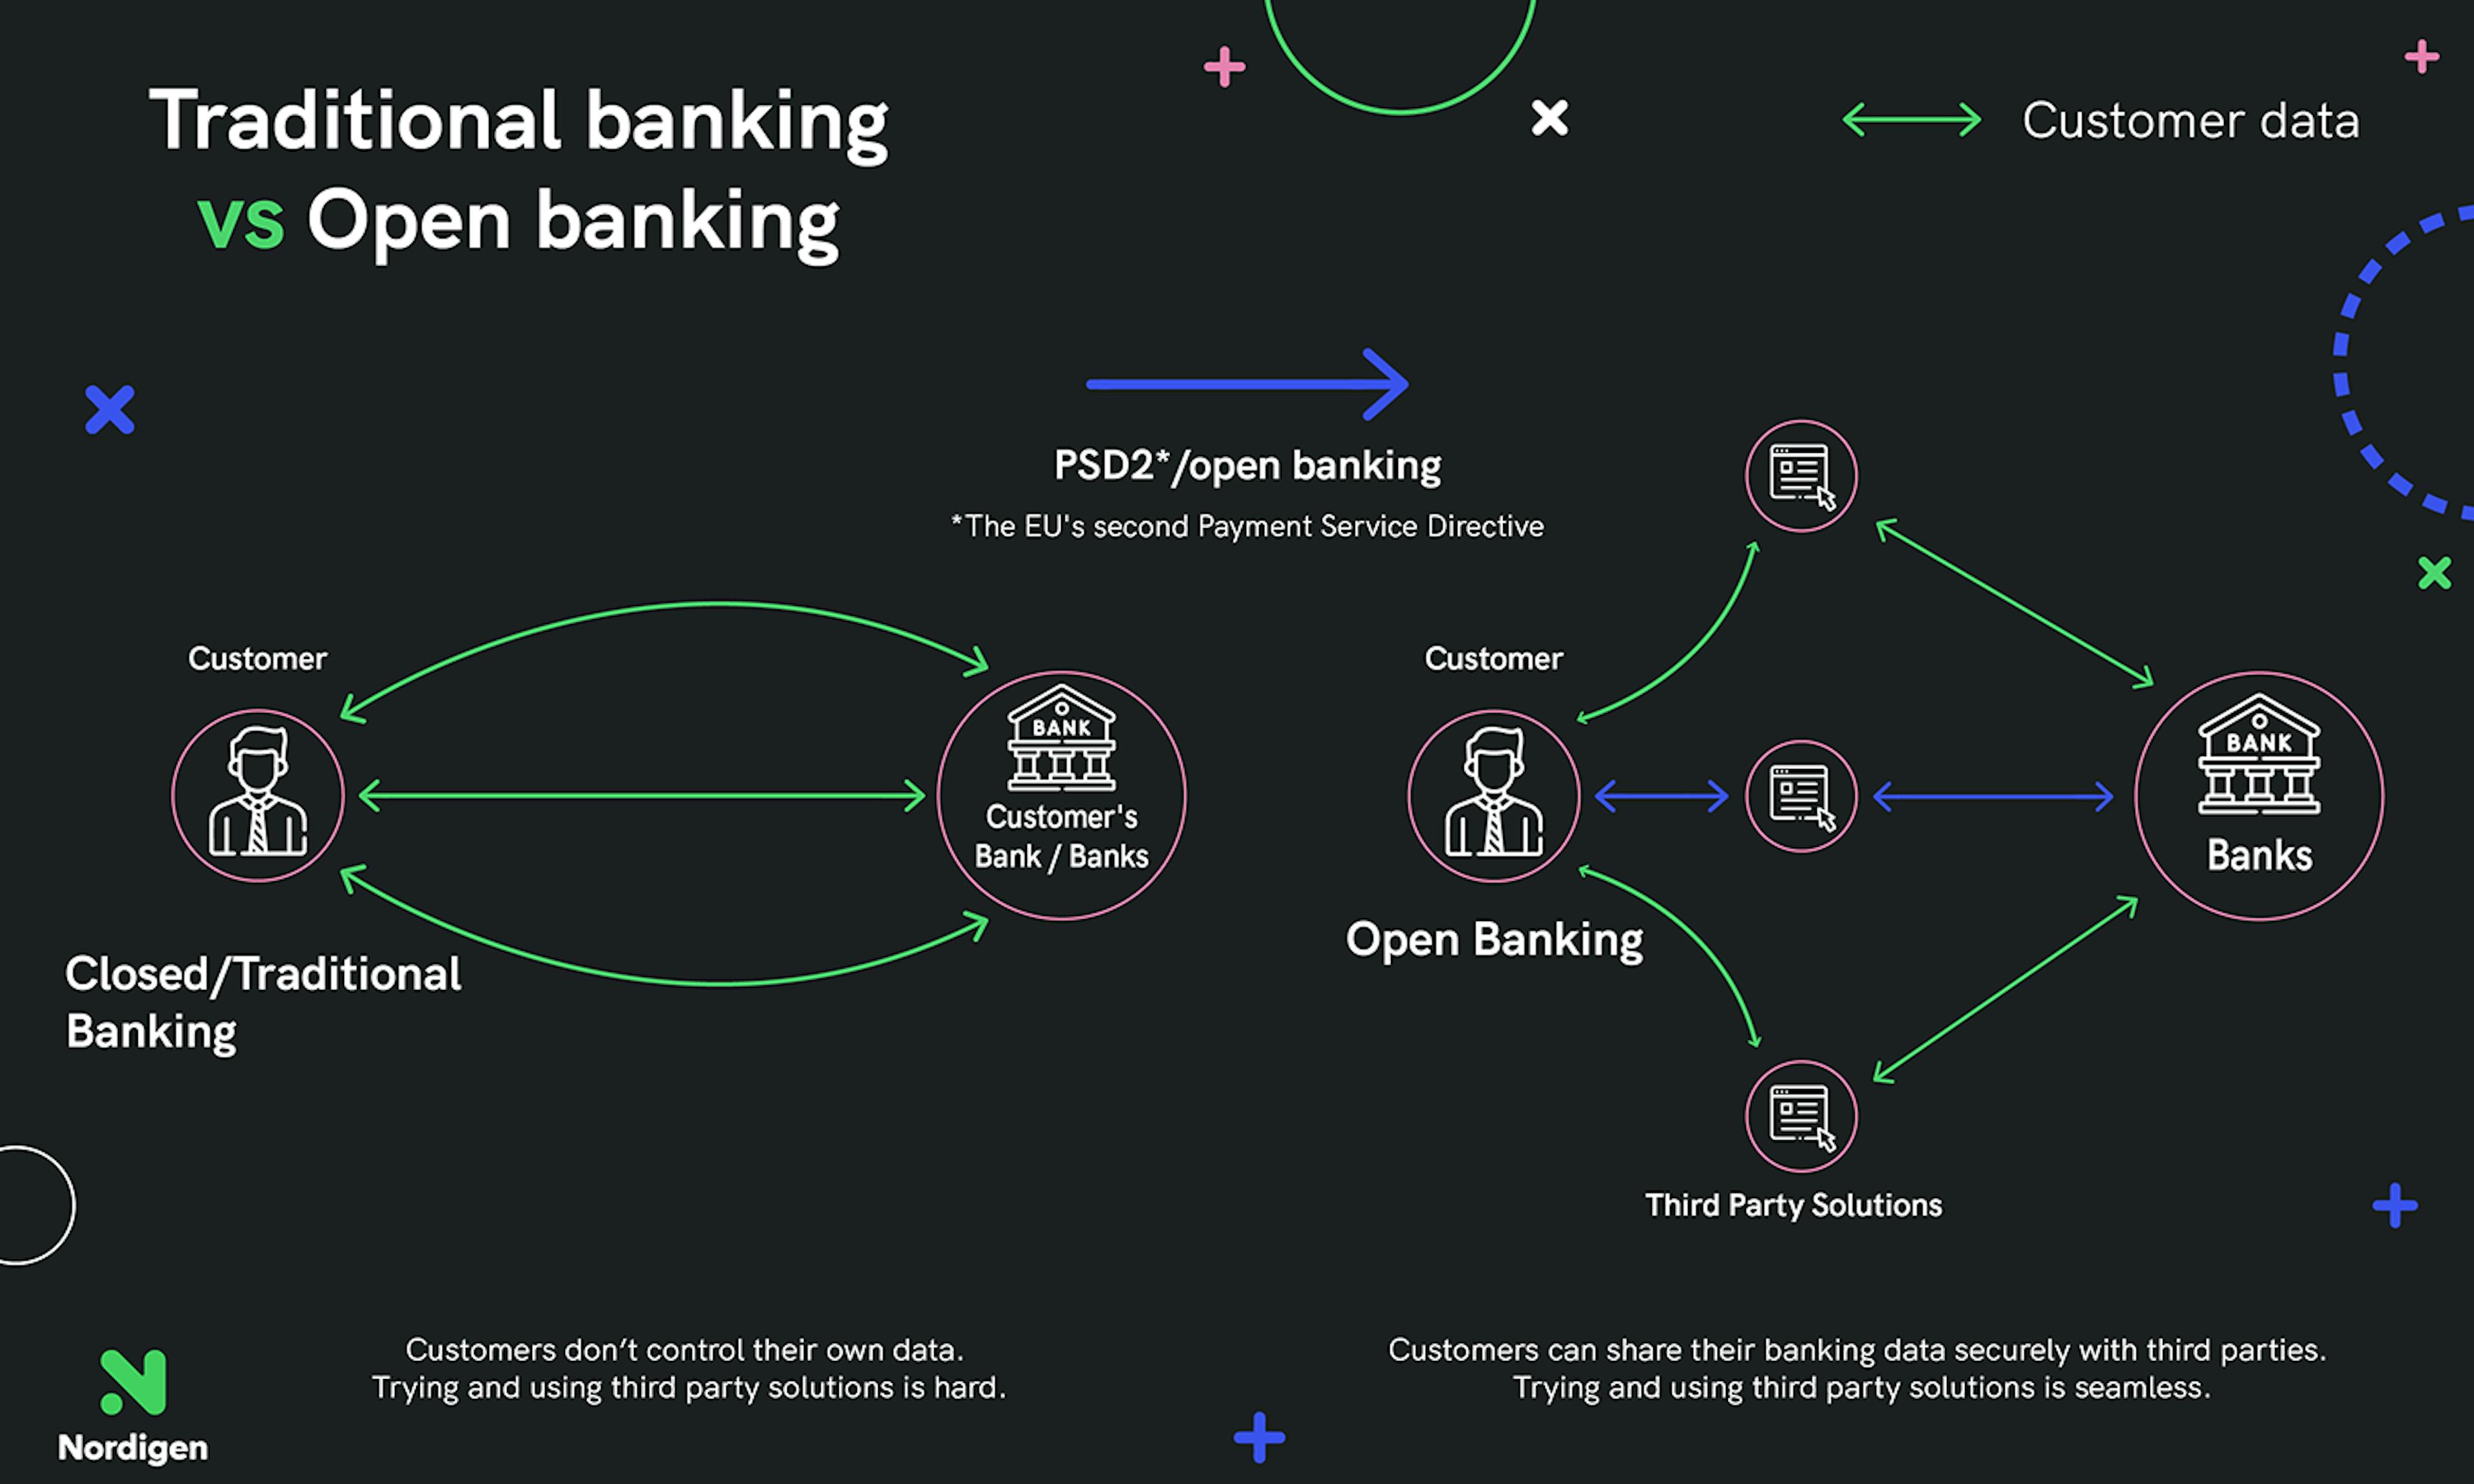 Fuente: “Los bancos tradicionales deben adoptar la banca abierta. He aquí por qué” @Nordigen